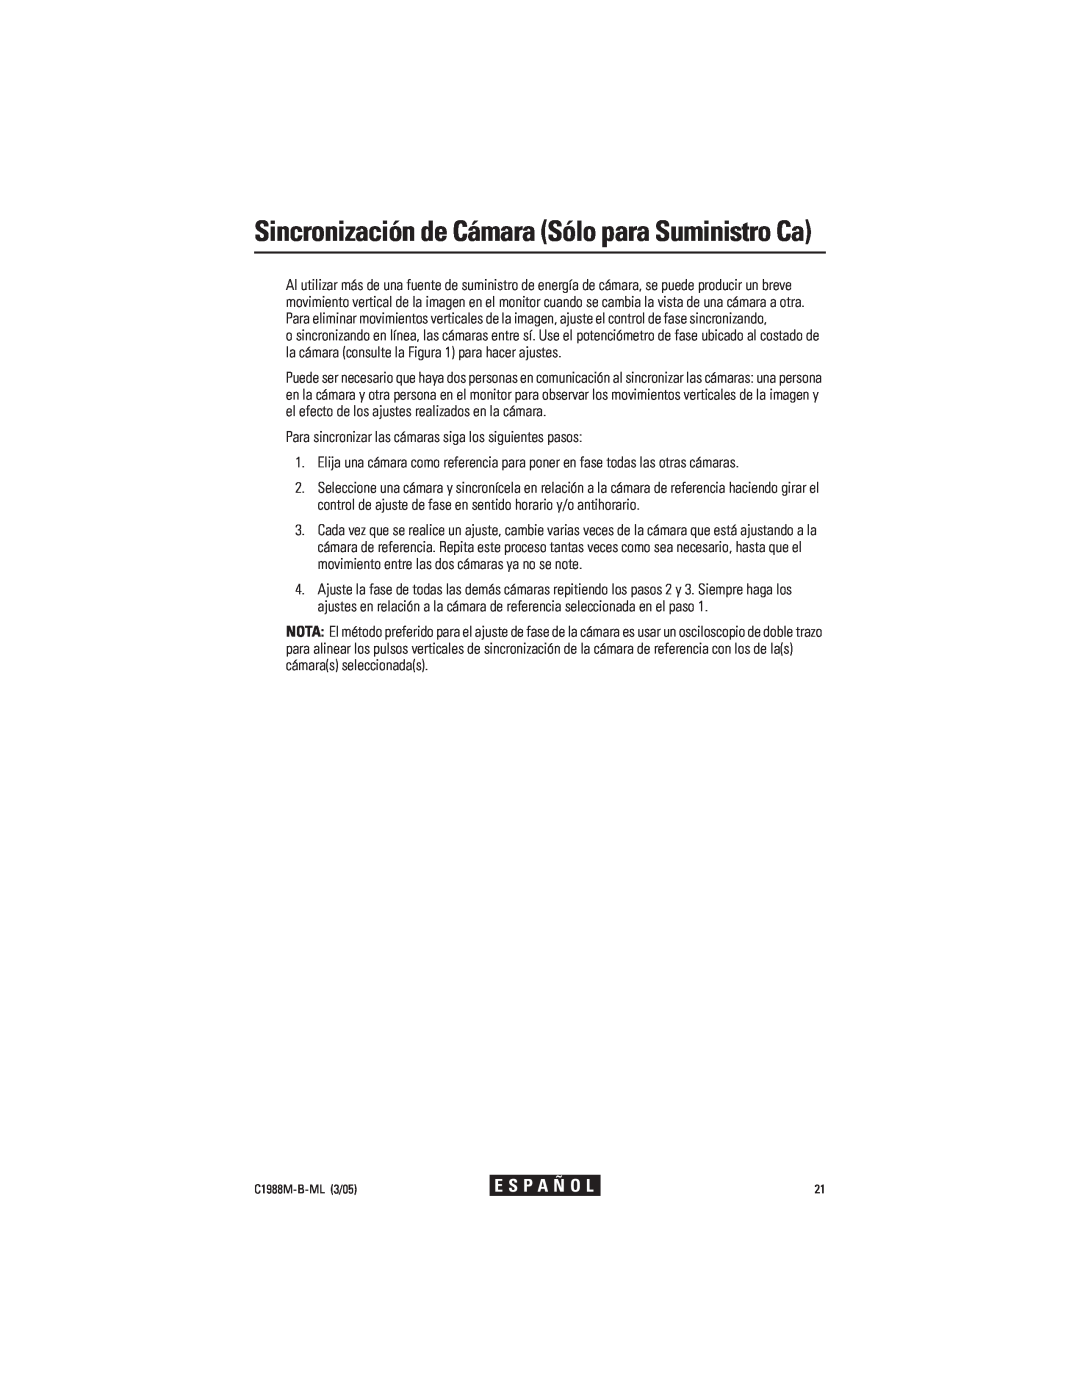 Pelco CC3751H-2 manual Sincronización de Cámara Sólo para Suministro Ca, E S P A Ñ O L, C1988M-B-ML3/05 